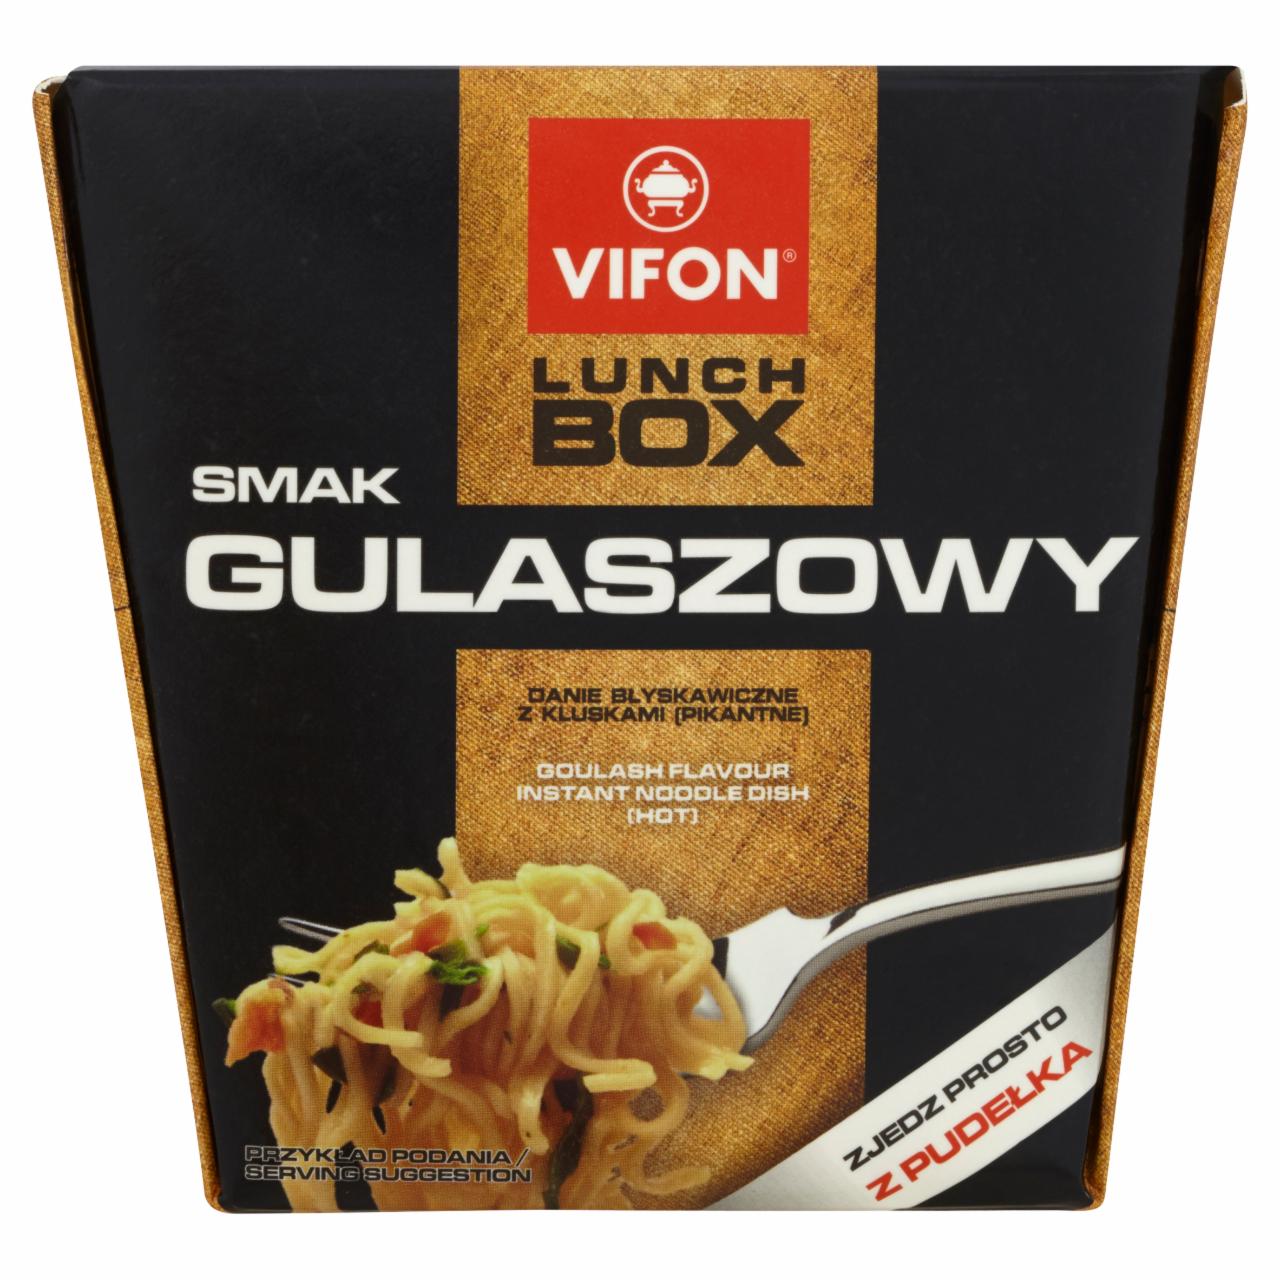 Zdjęcia - Vifon Lunch Box smak gulaszowy Danie błyskawiczne z kluskami pikantne 80 g